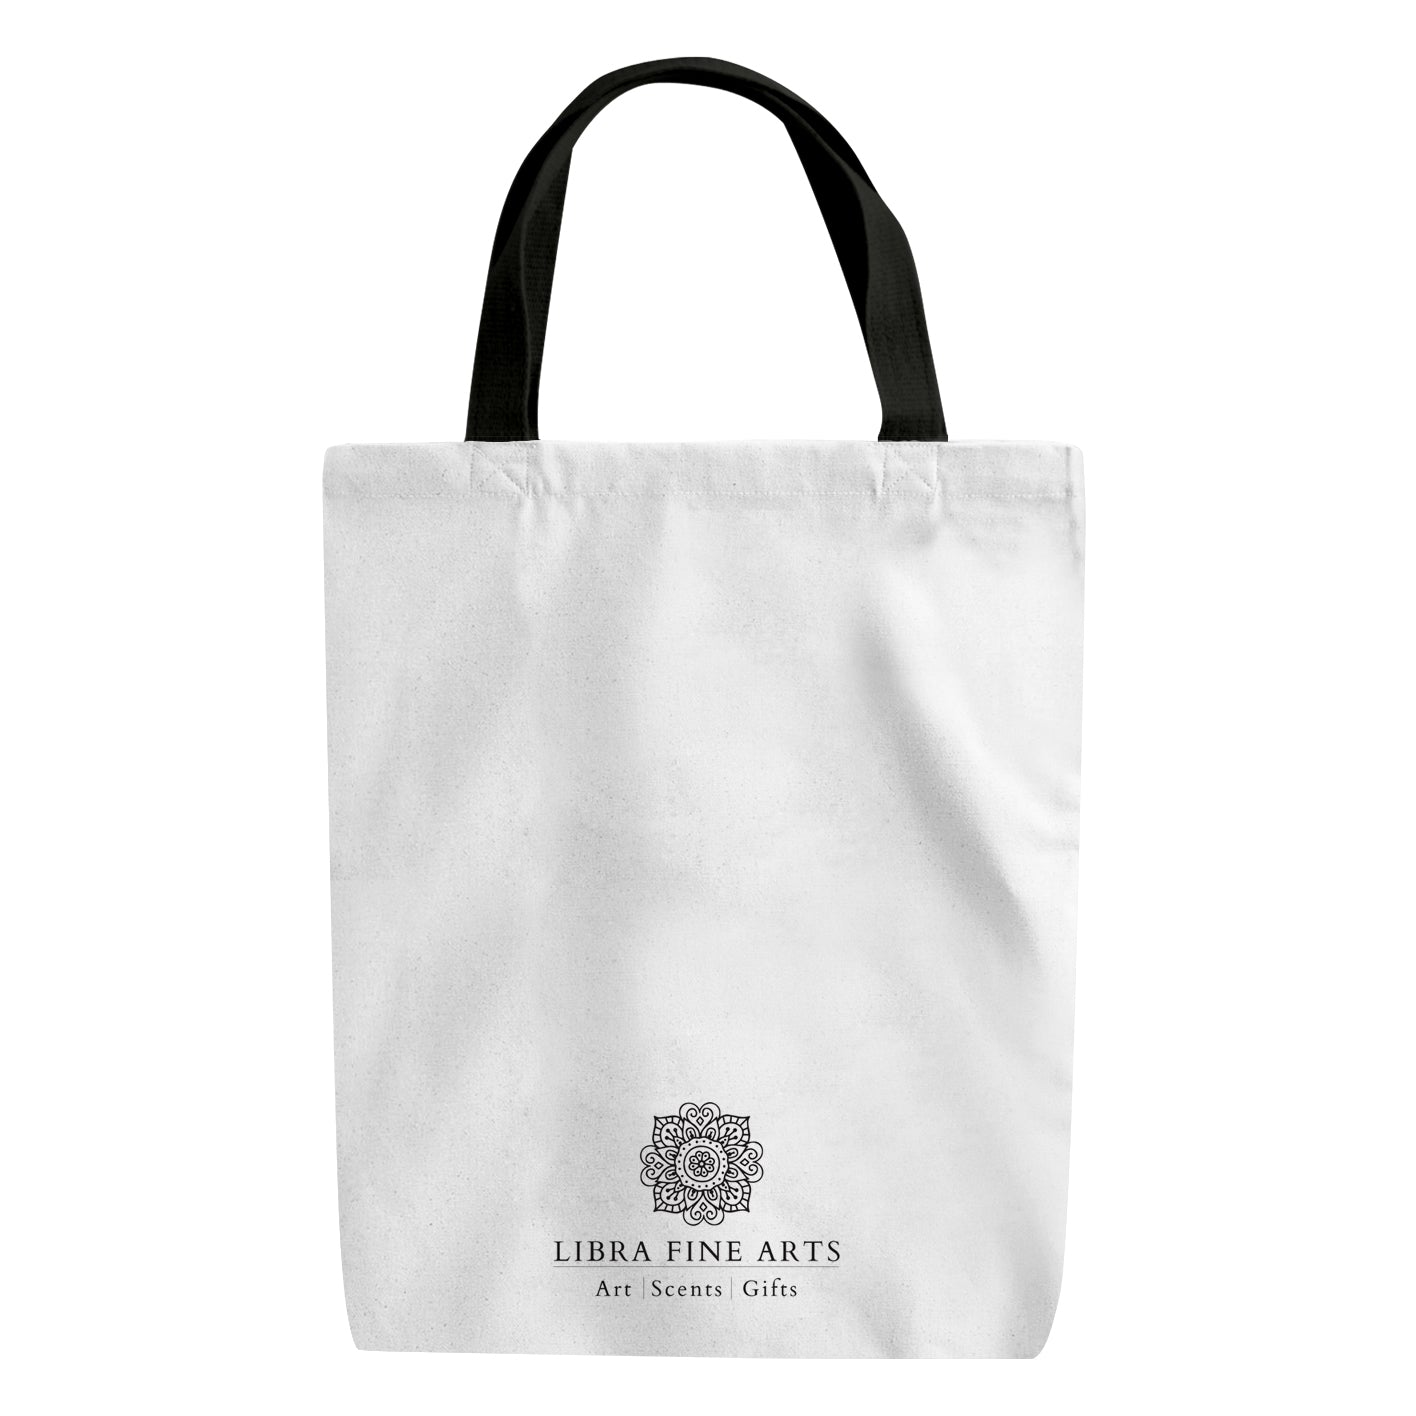 Hippo Shopper Bag From Libra Fine Arts